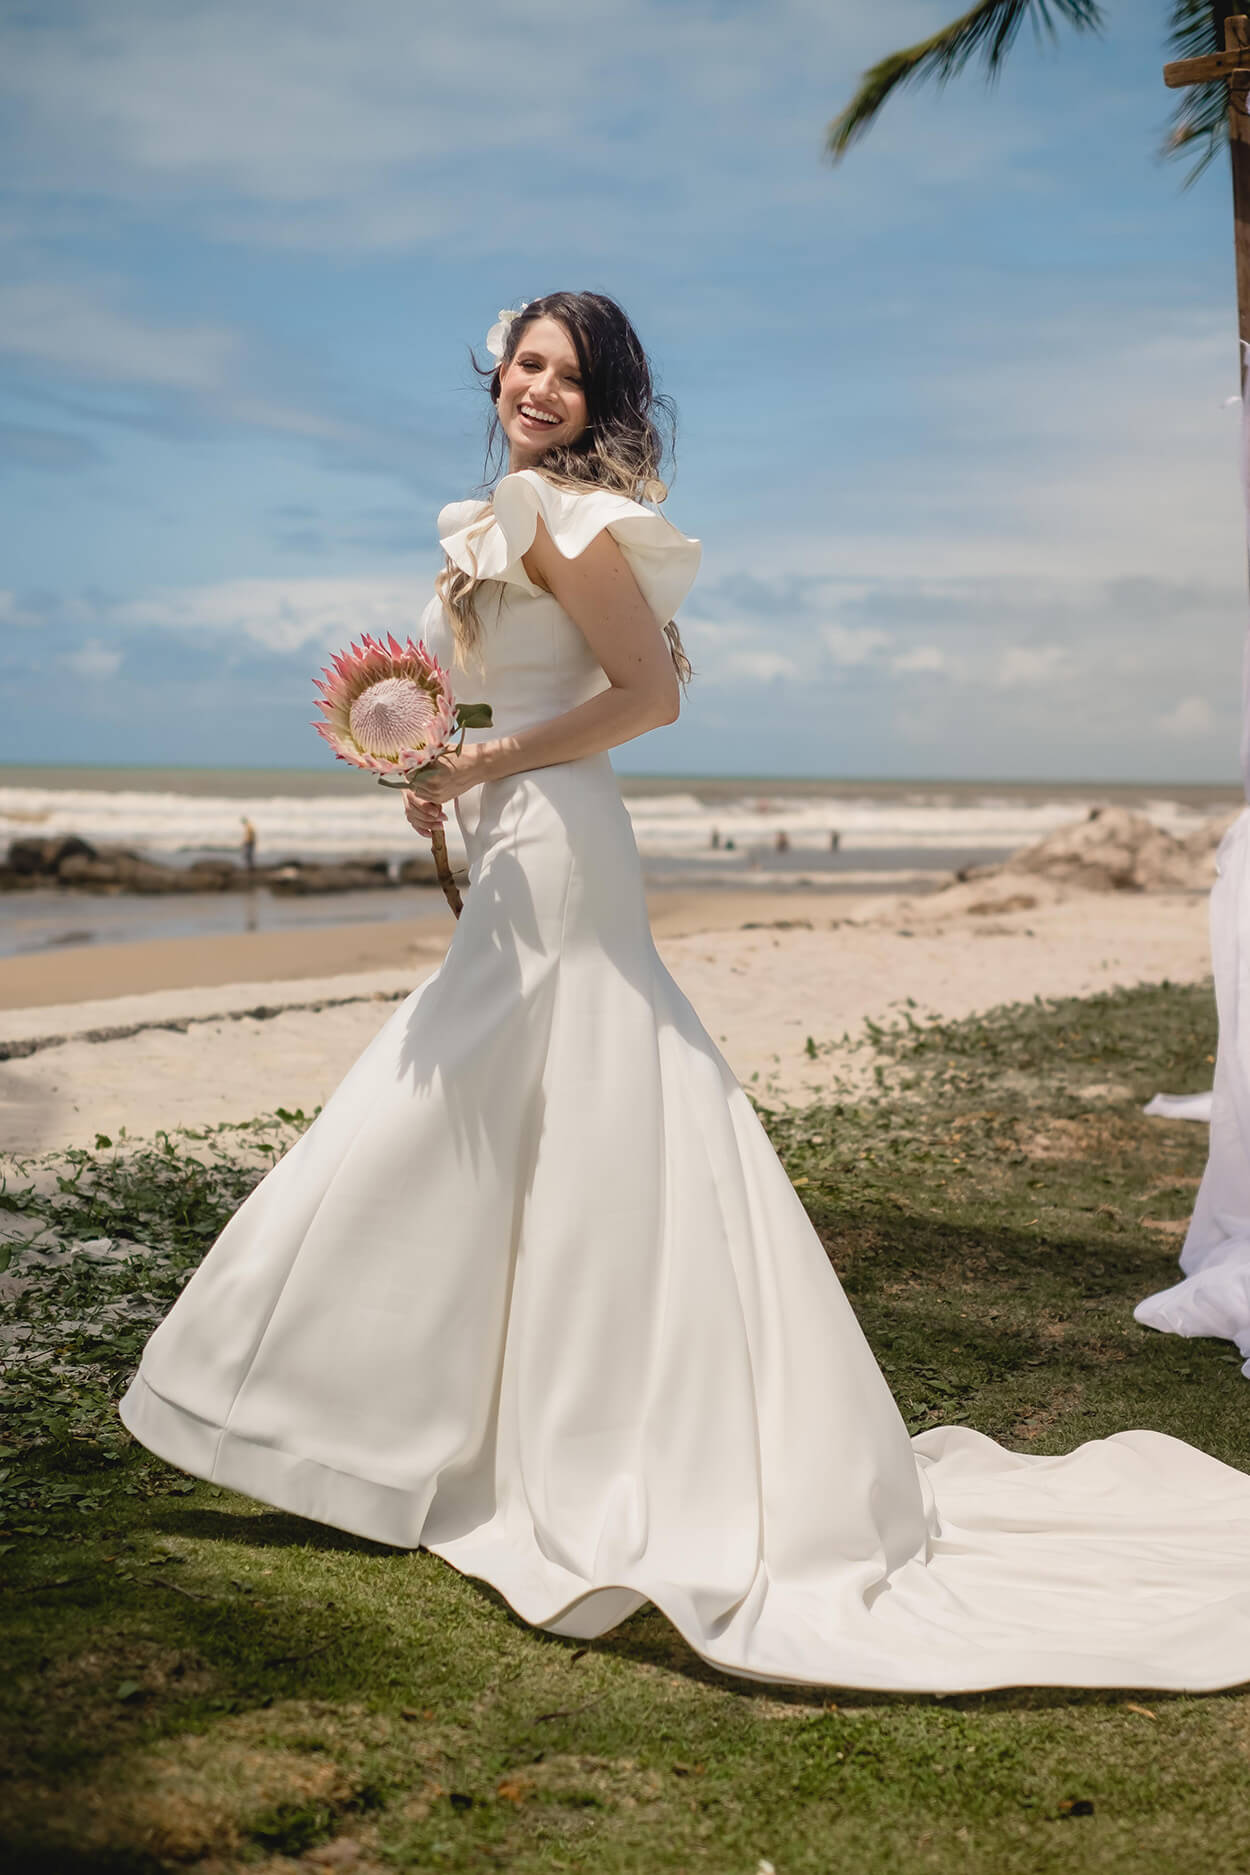 Mulher com vestido de noiva com cauda e segurando protea na praia